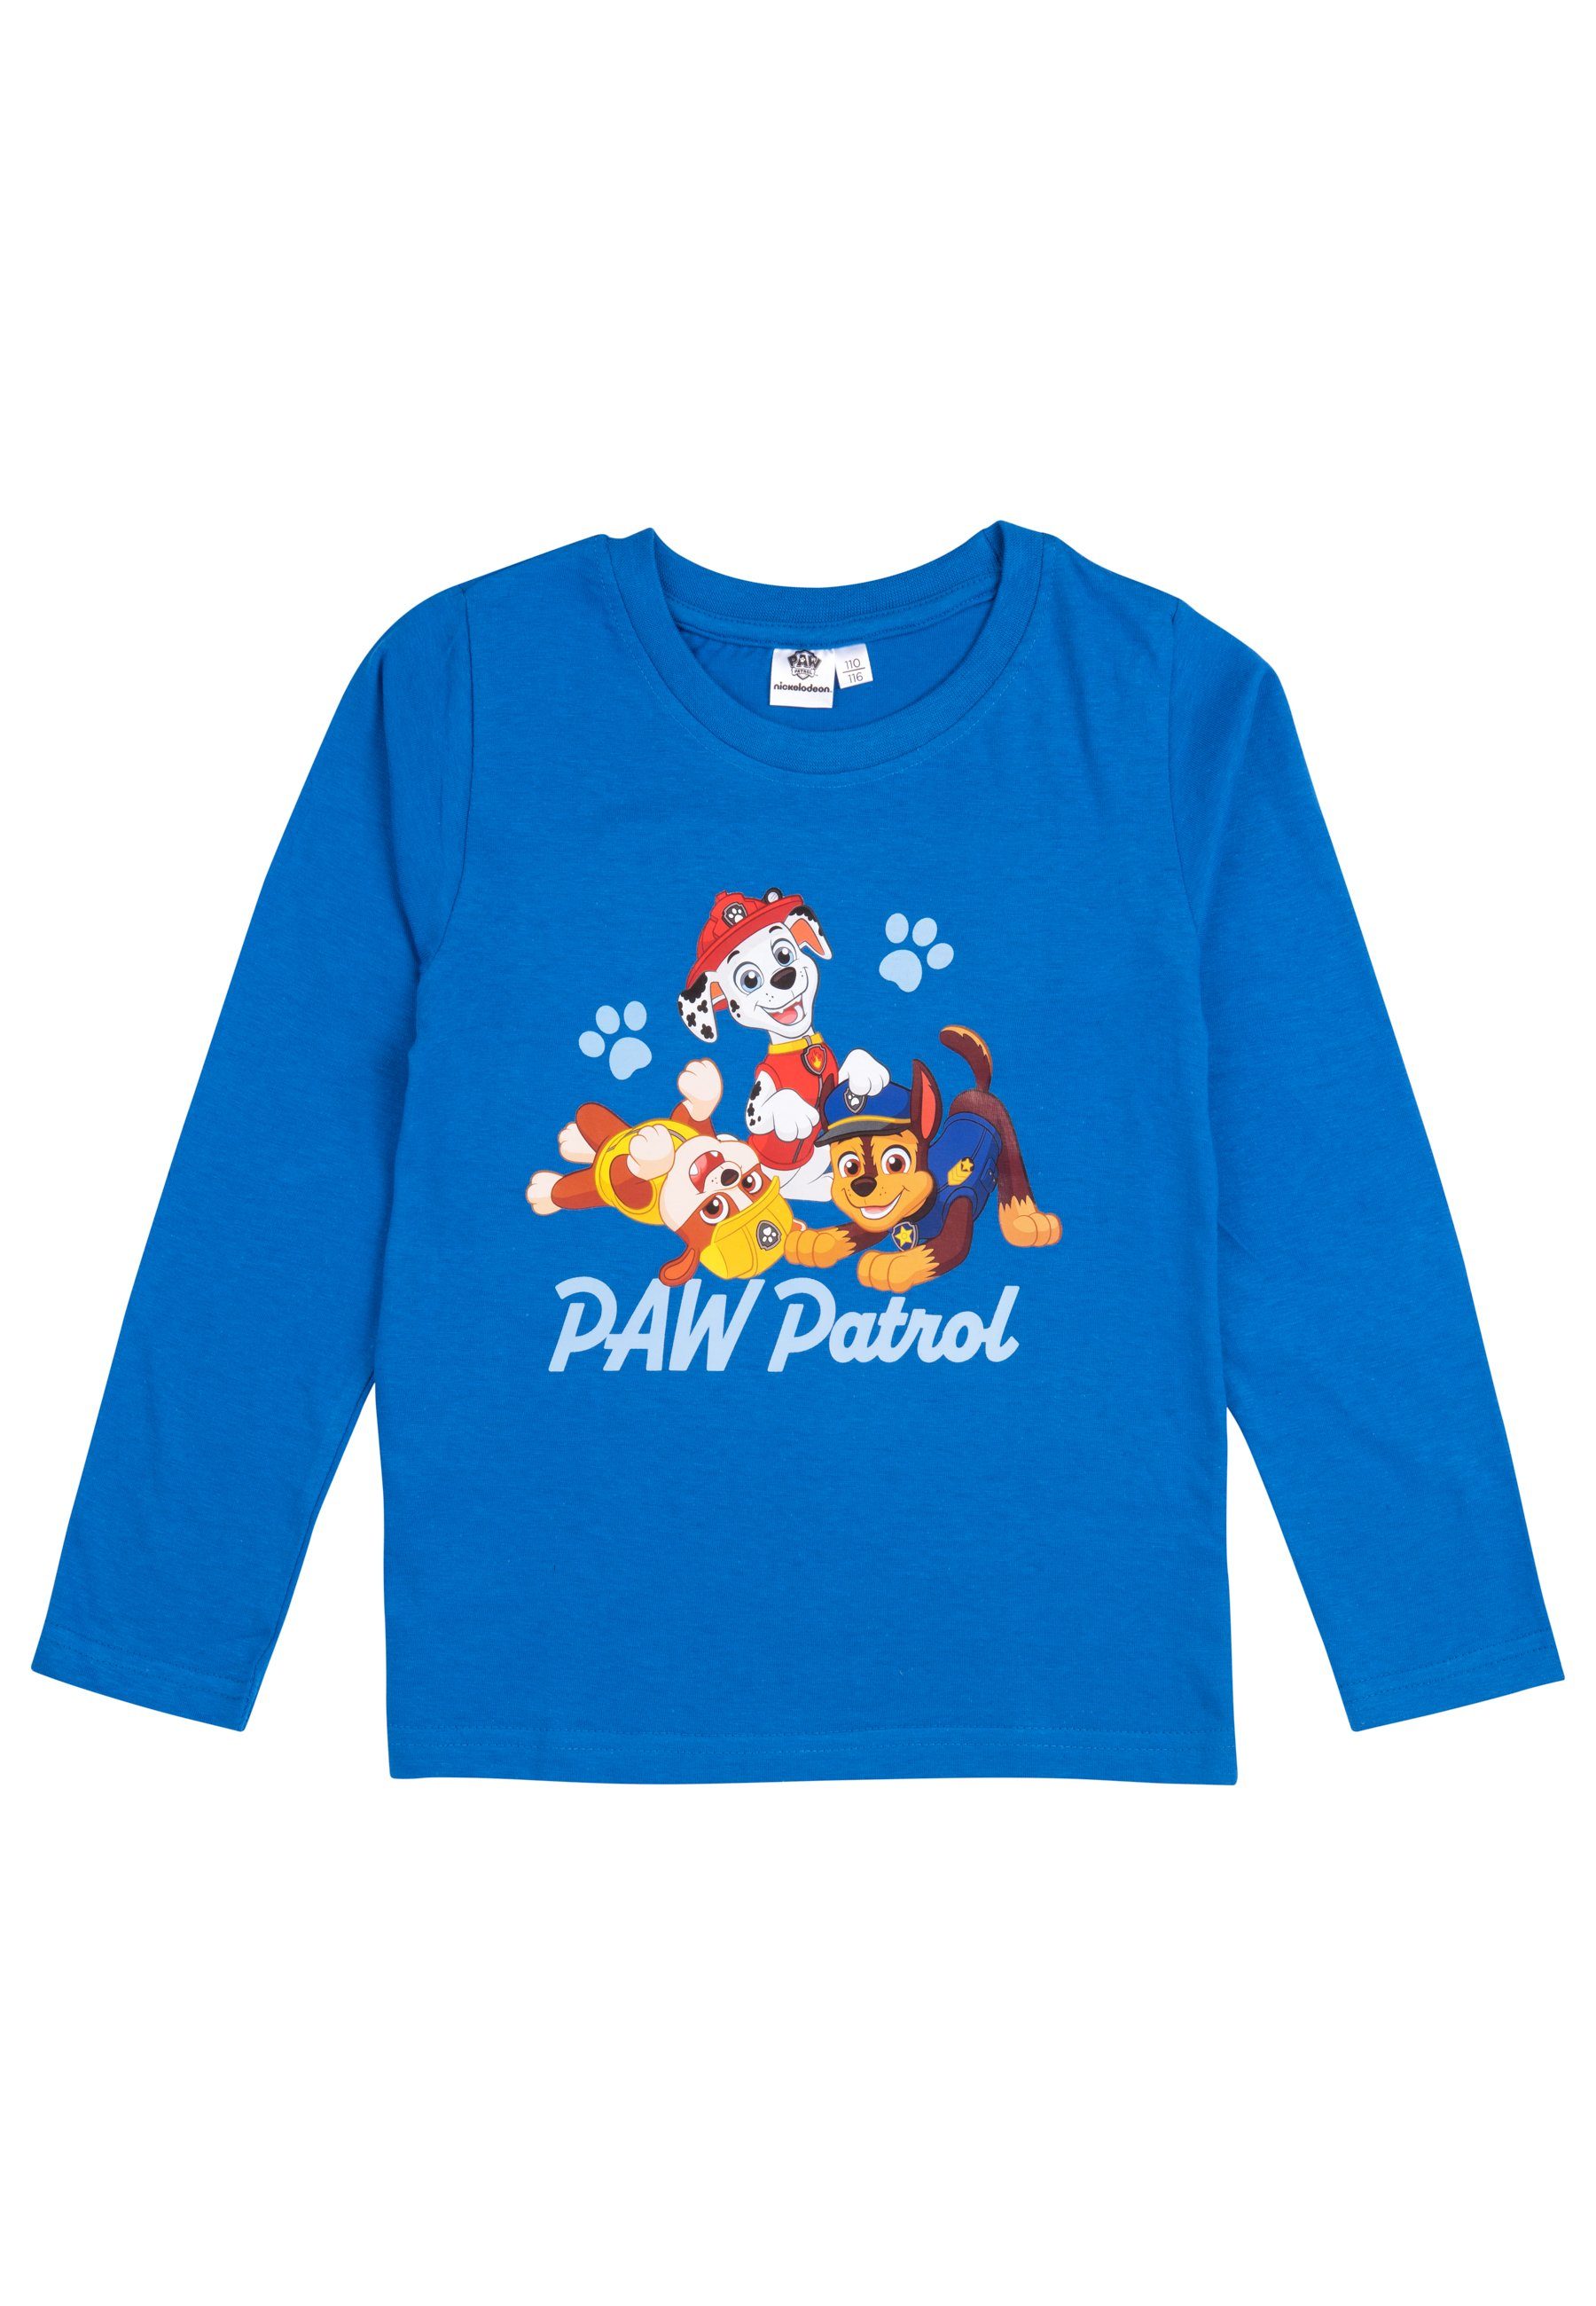 United Labels® Sweatshirt Paw Patrol Pullover für Jungen - Kinder Sweatshirt Langarm Blau